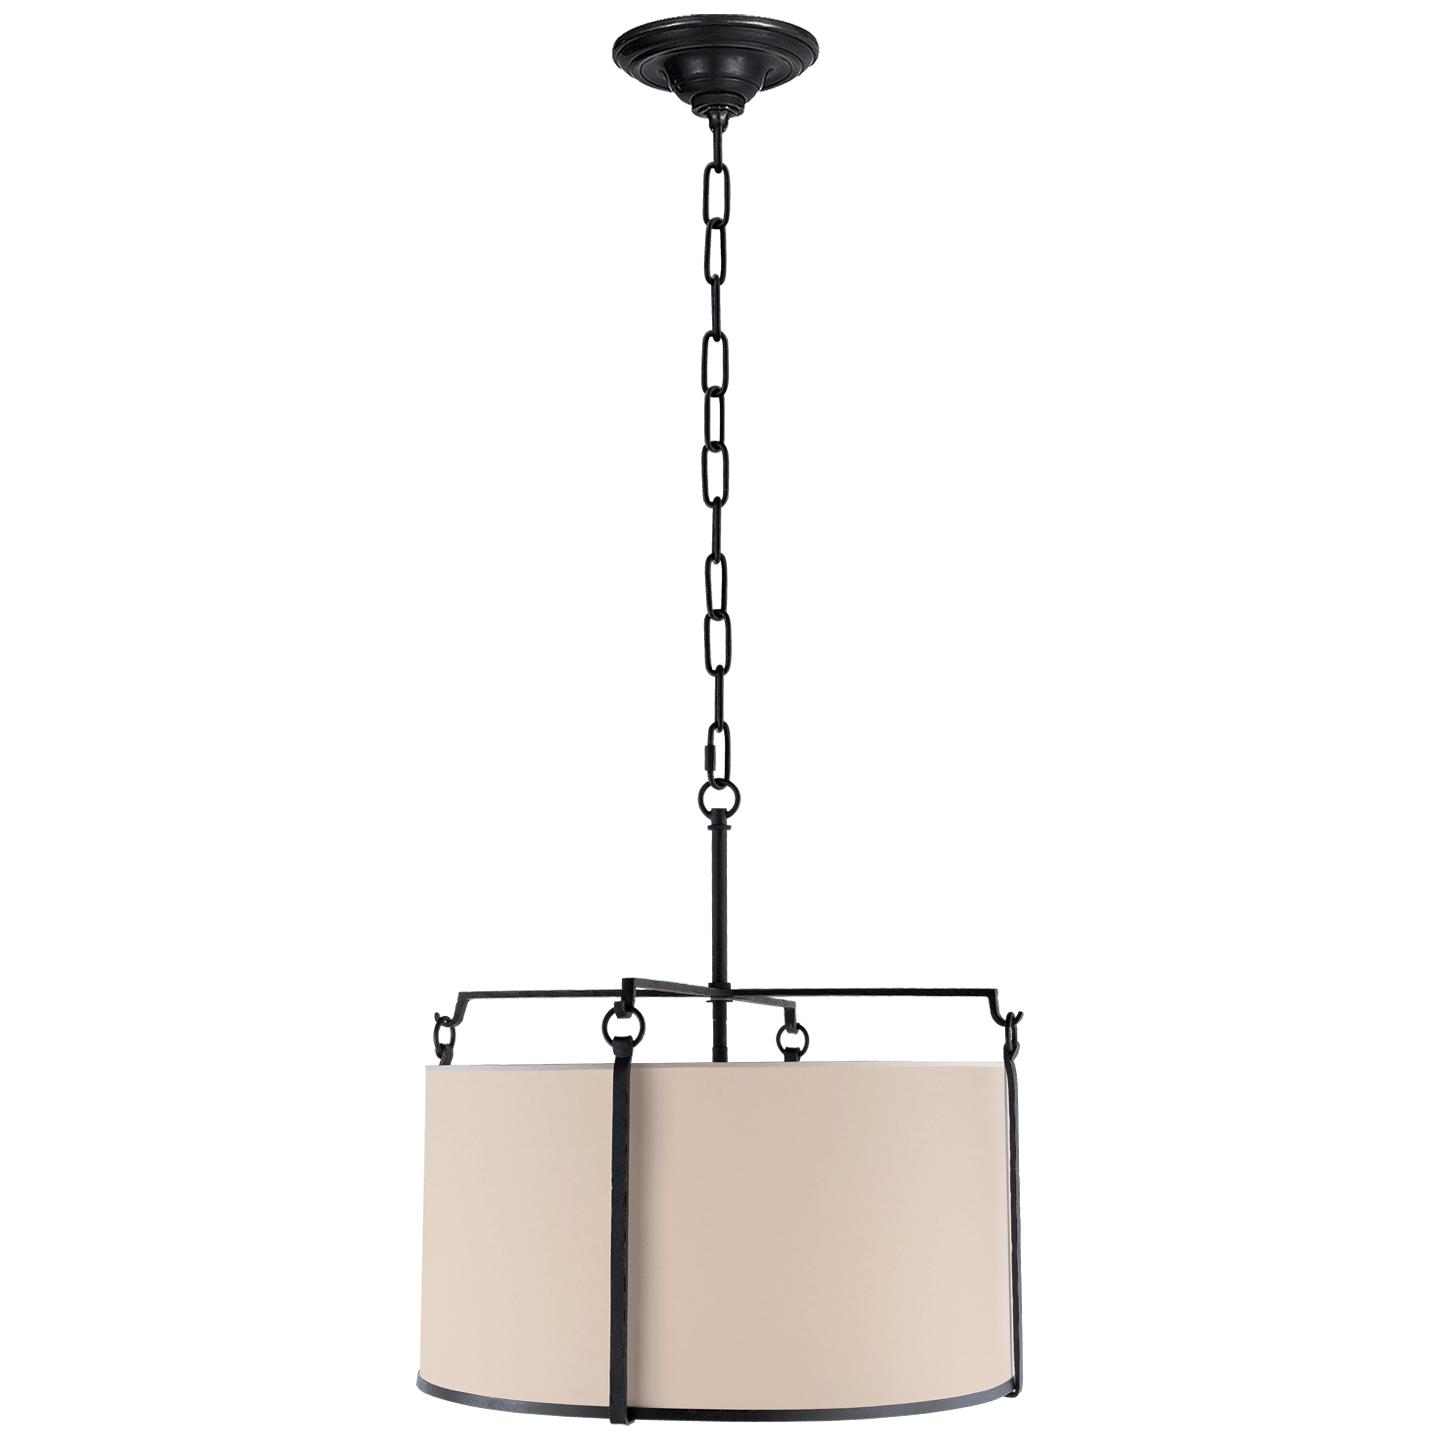 Купить Подвесной светильник Aspen Medium Hanging Shade в интернет-магазине roooms.ru